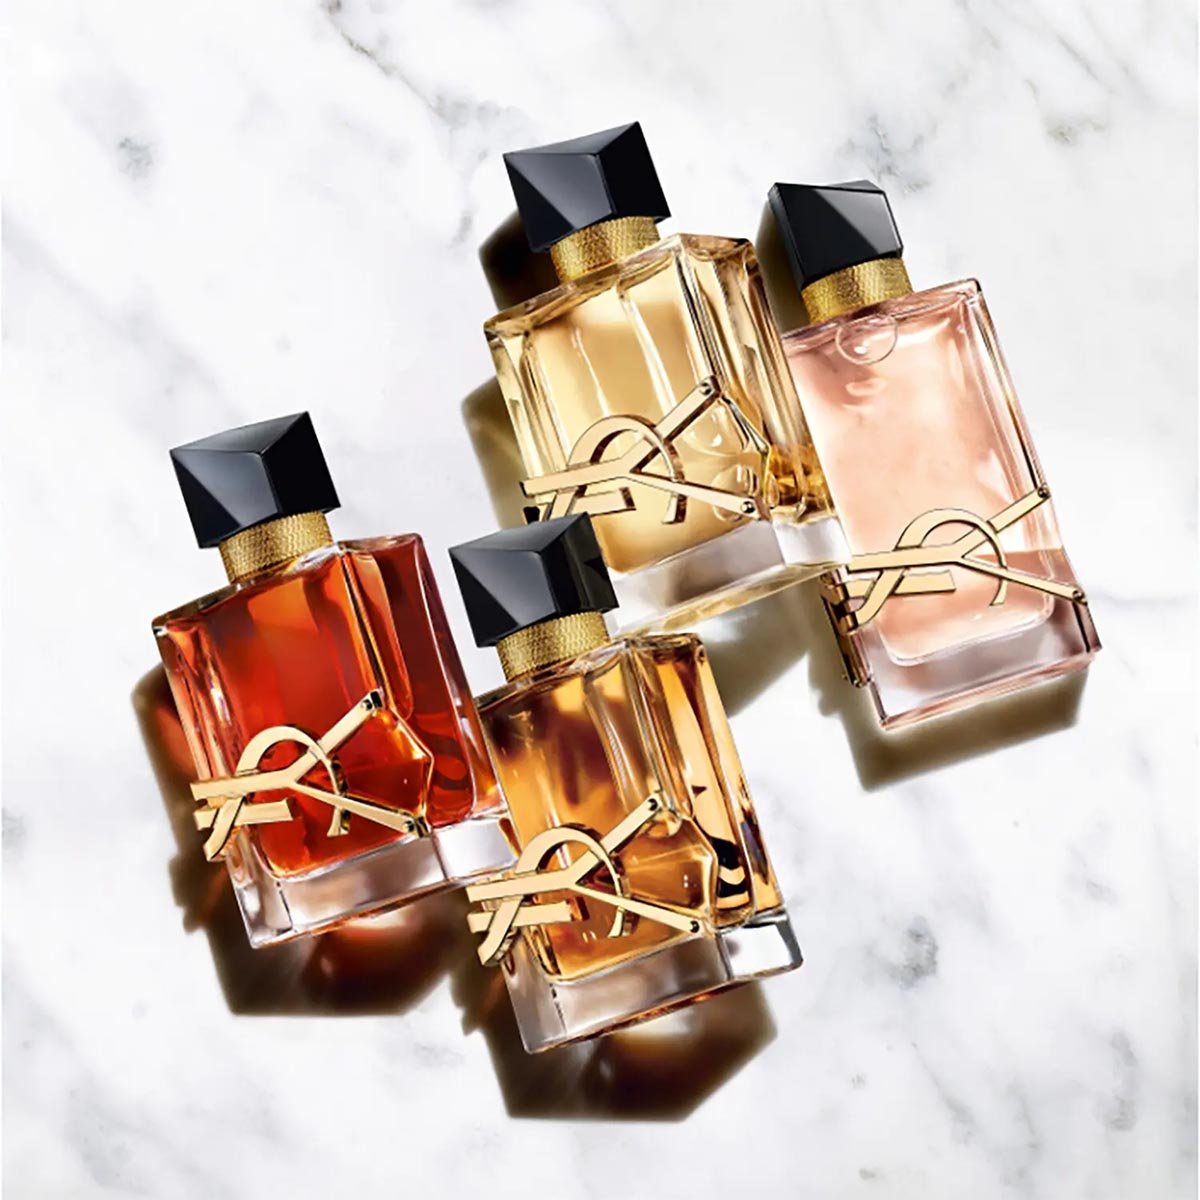 Yves Saint Laurent Libre Le Parfum | My Perfume Shop Australia